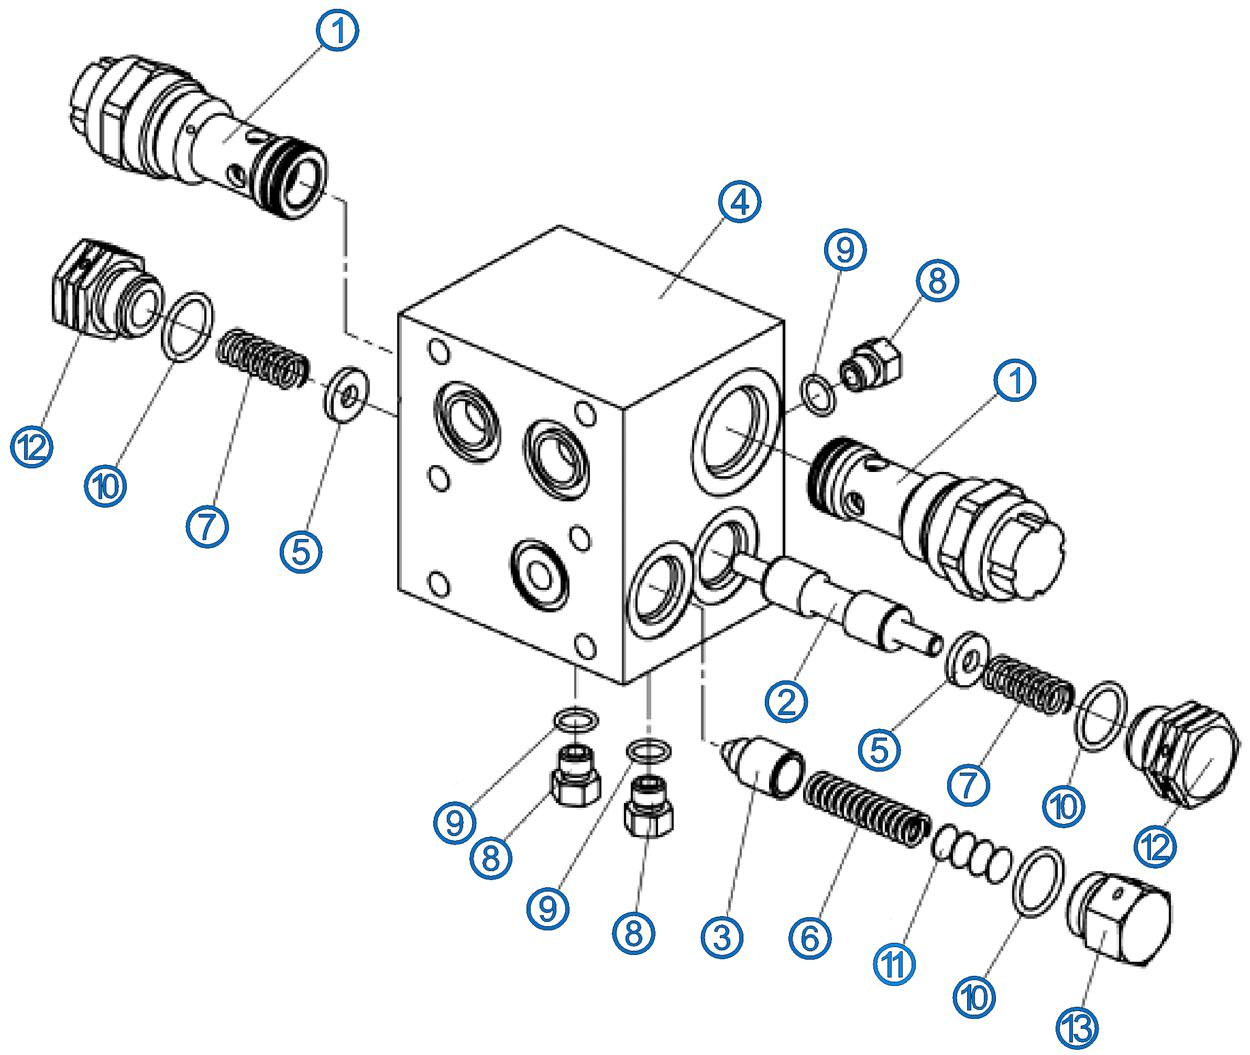 Структурная схема клапанной коробки МП90-02.000СБ